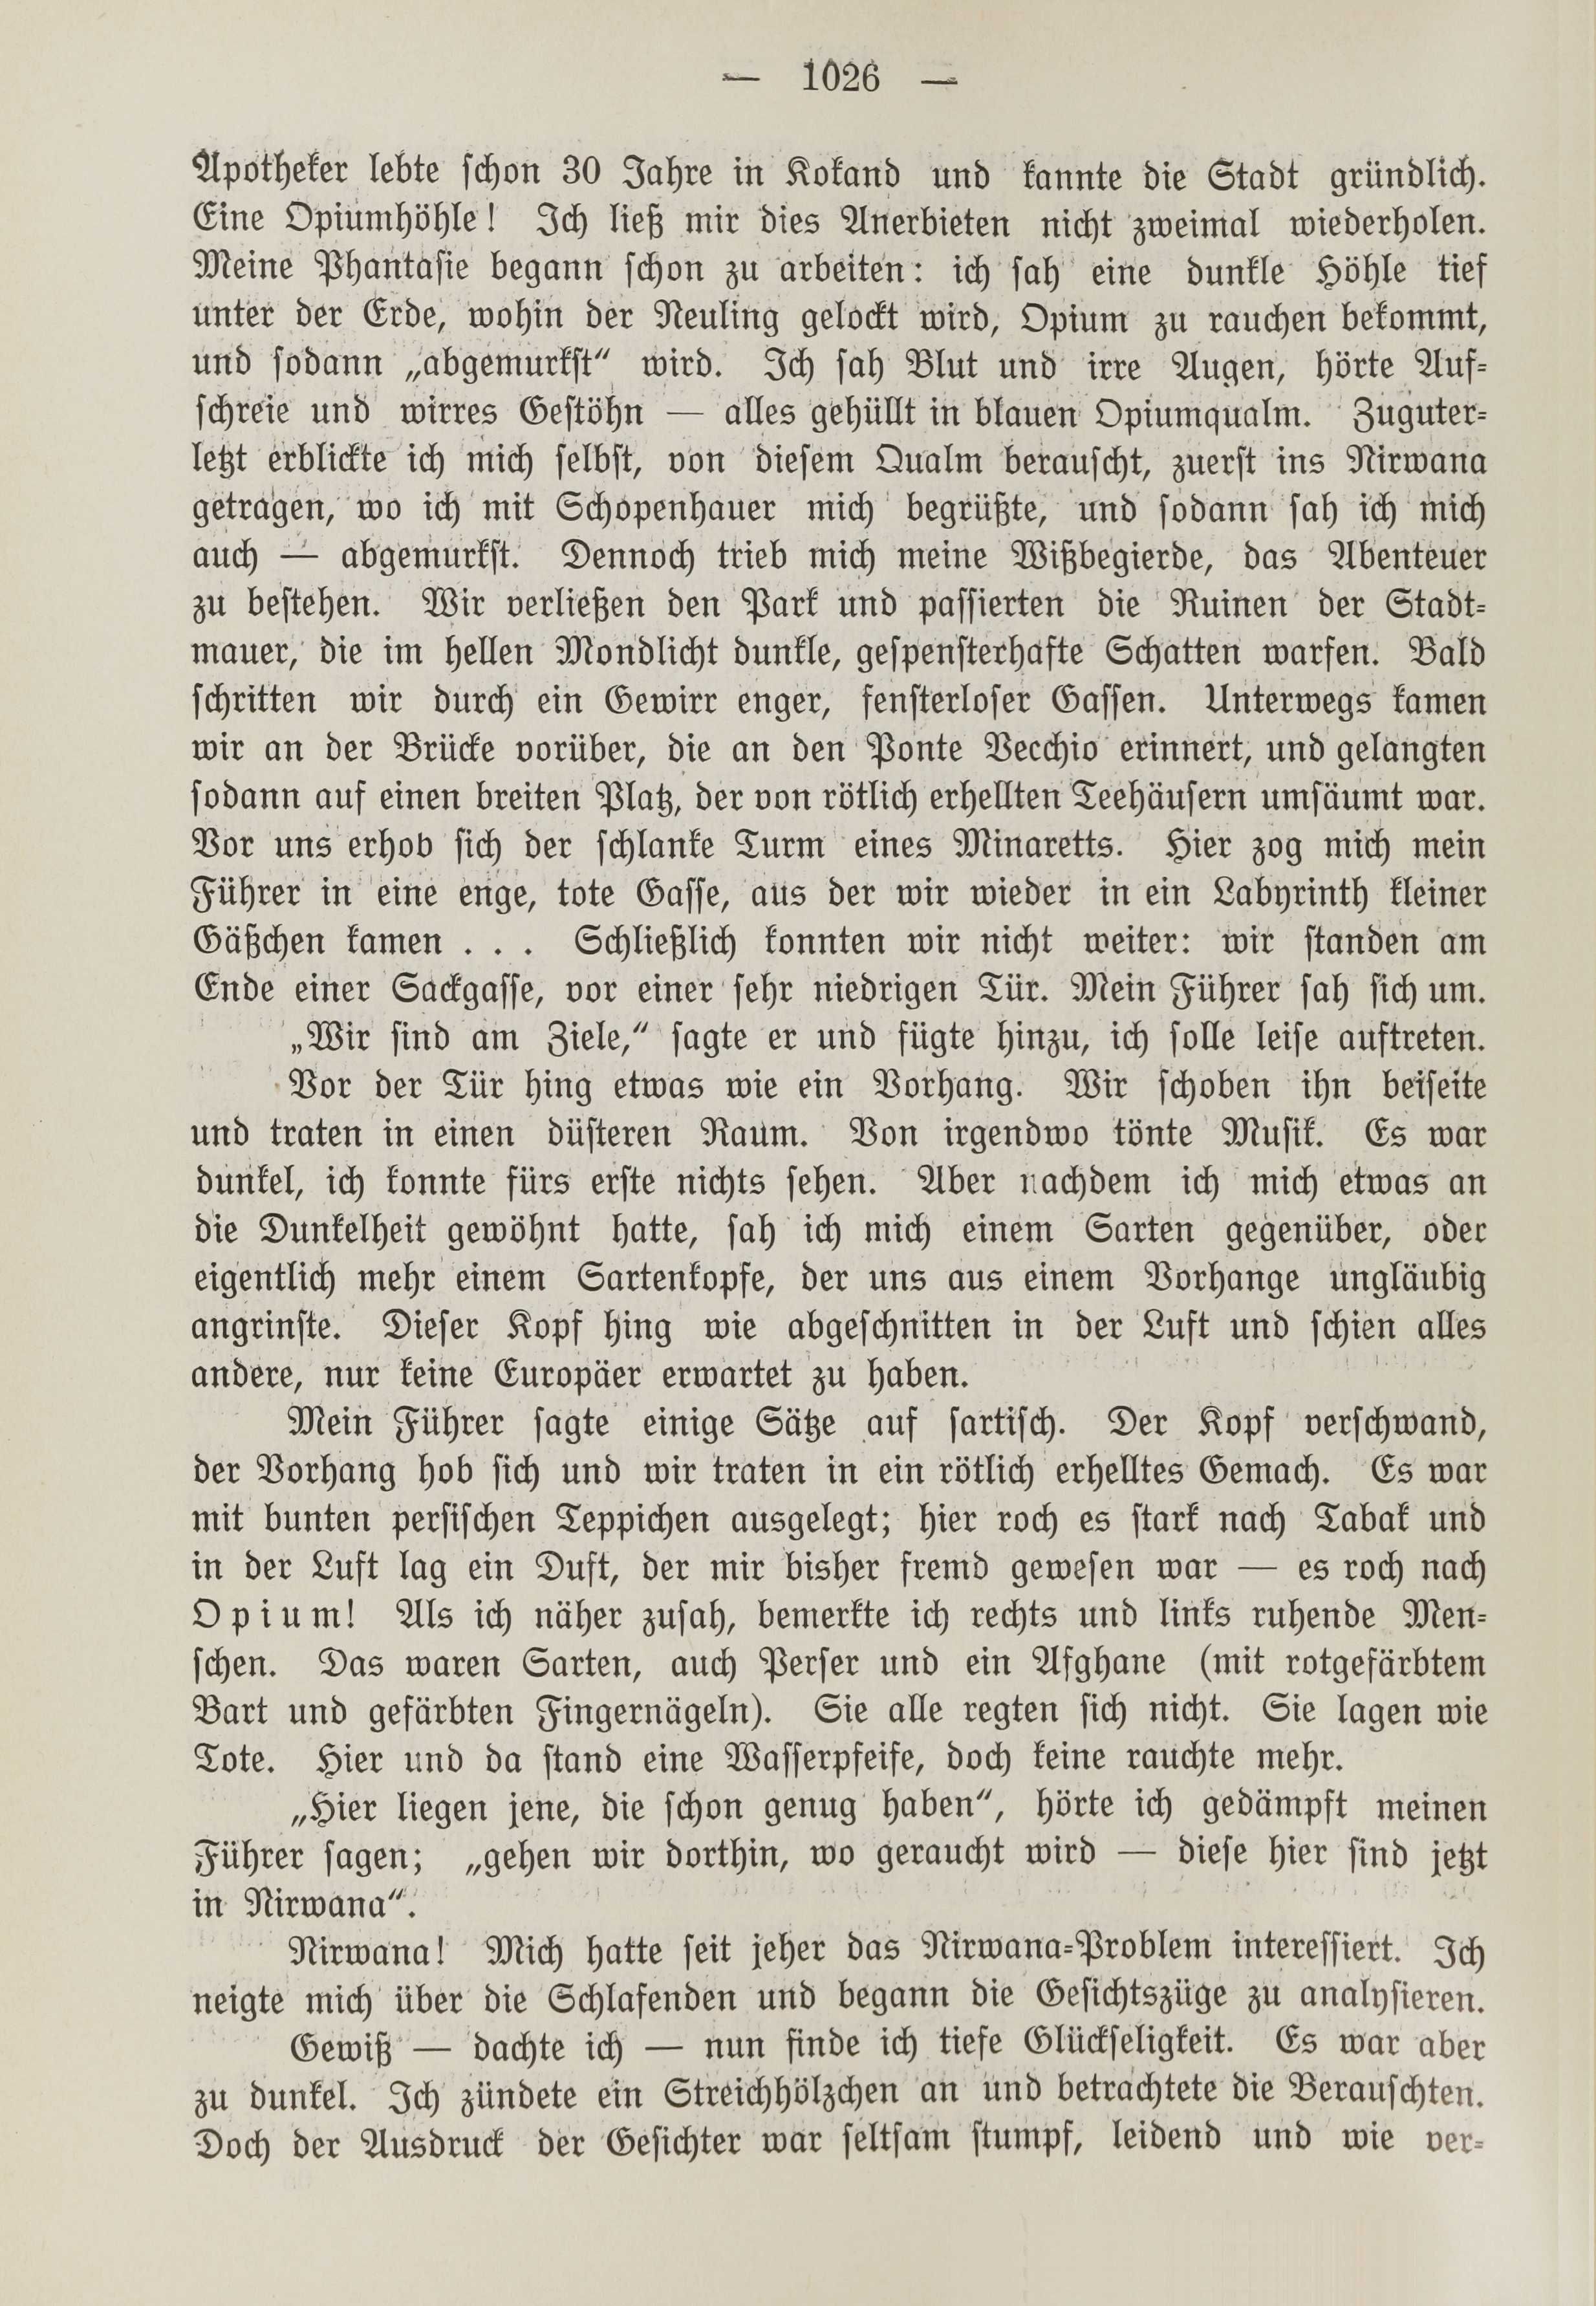 Deutsche Monatsschrift für Russland [1] (1912) | 1034. (1026) Main body of text